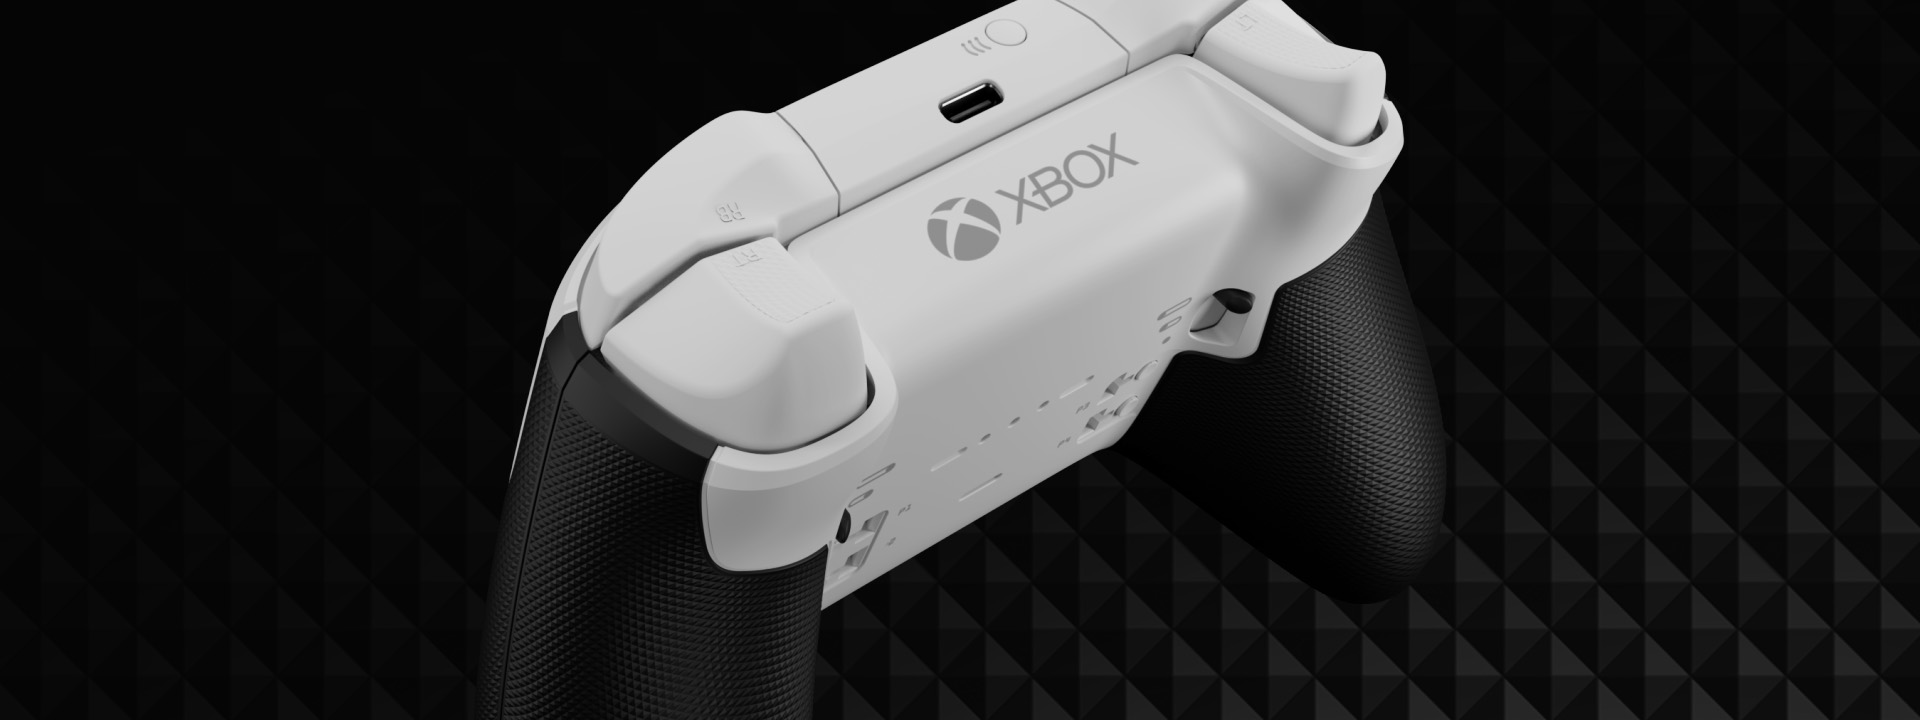 Xbox Elite ワイヤレス コントローラー シリーズ 2 – Core | Xbox